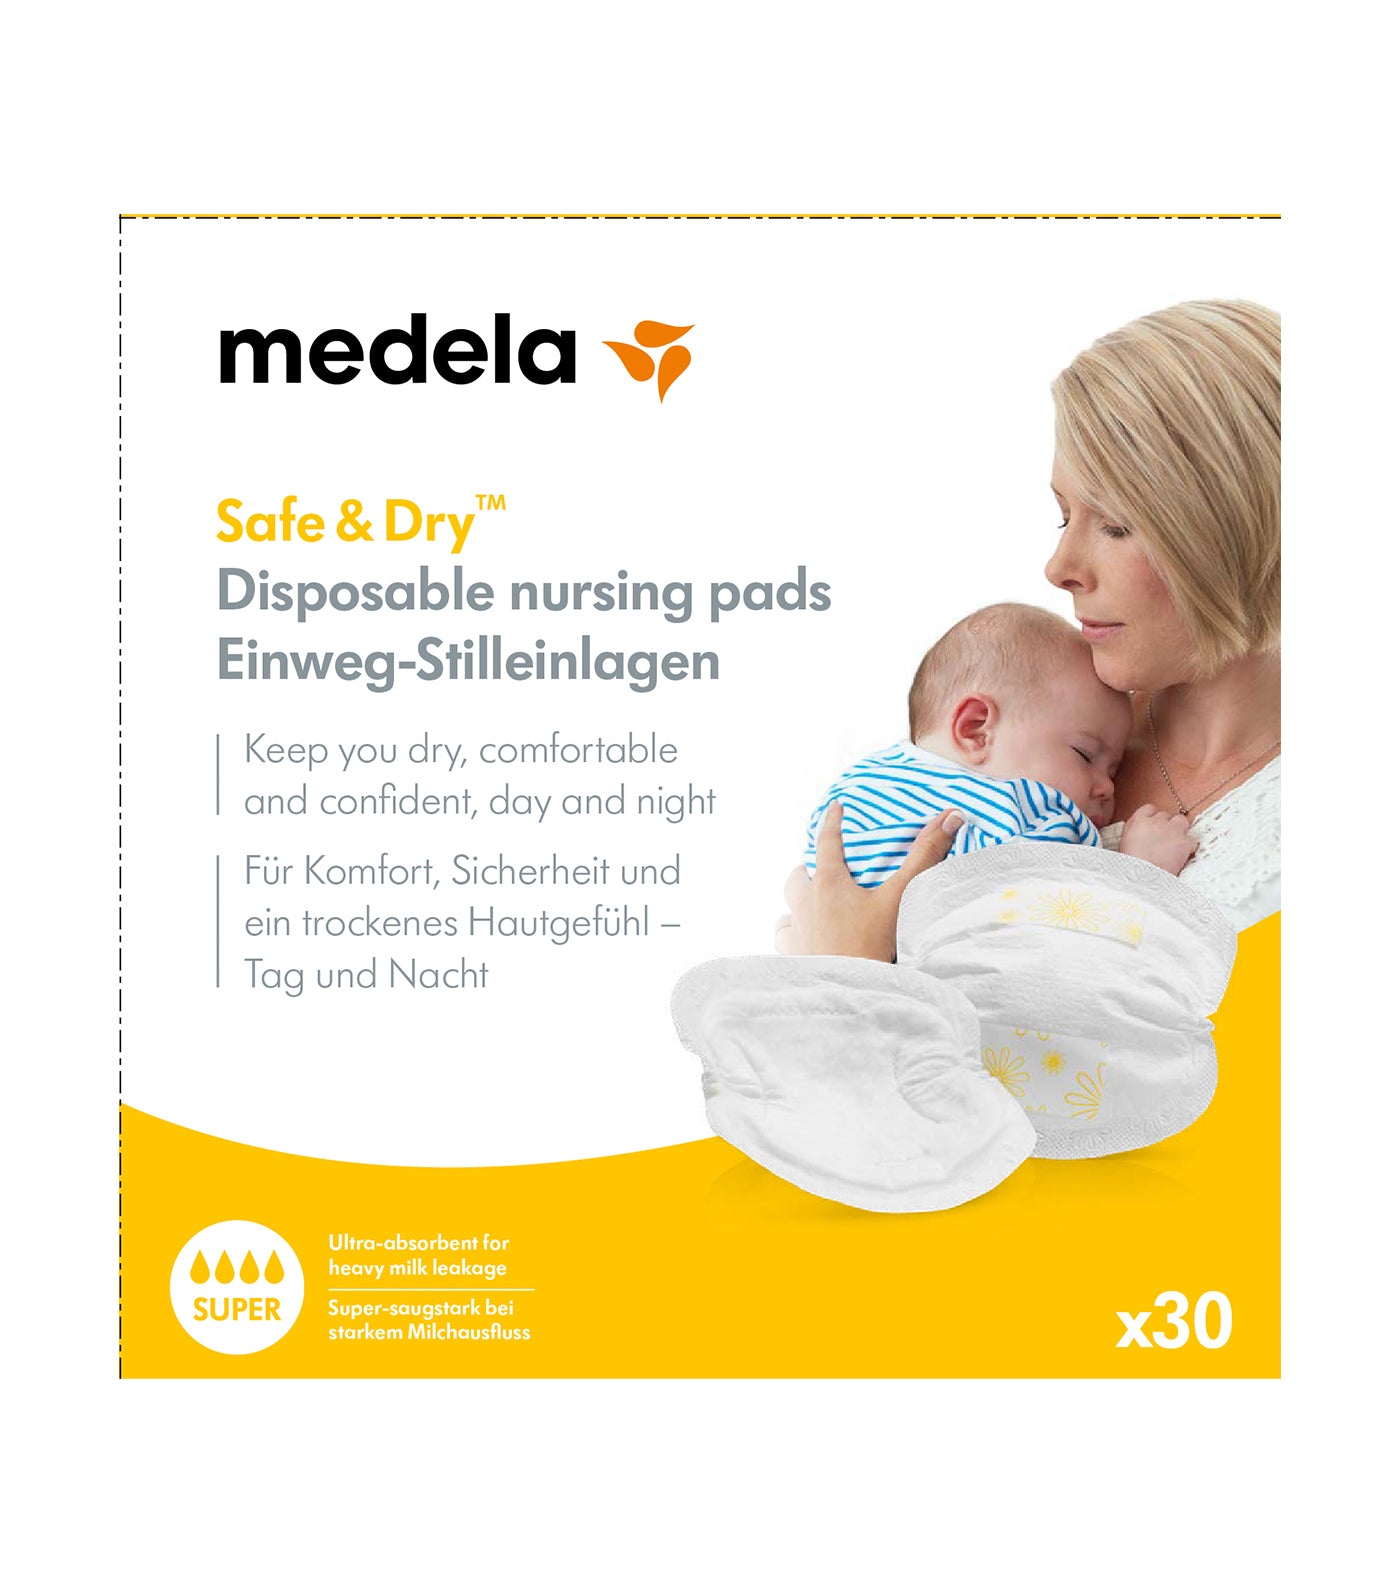 medela safe & dry™ disposable nursing pads (30s)